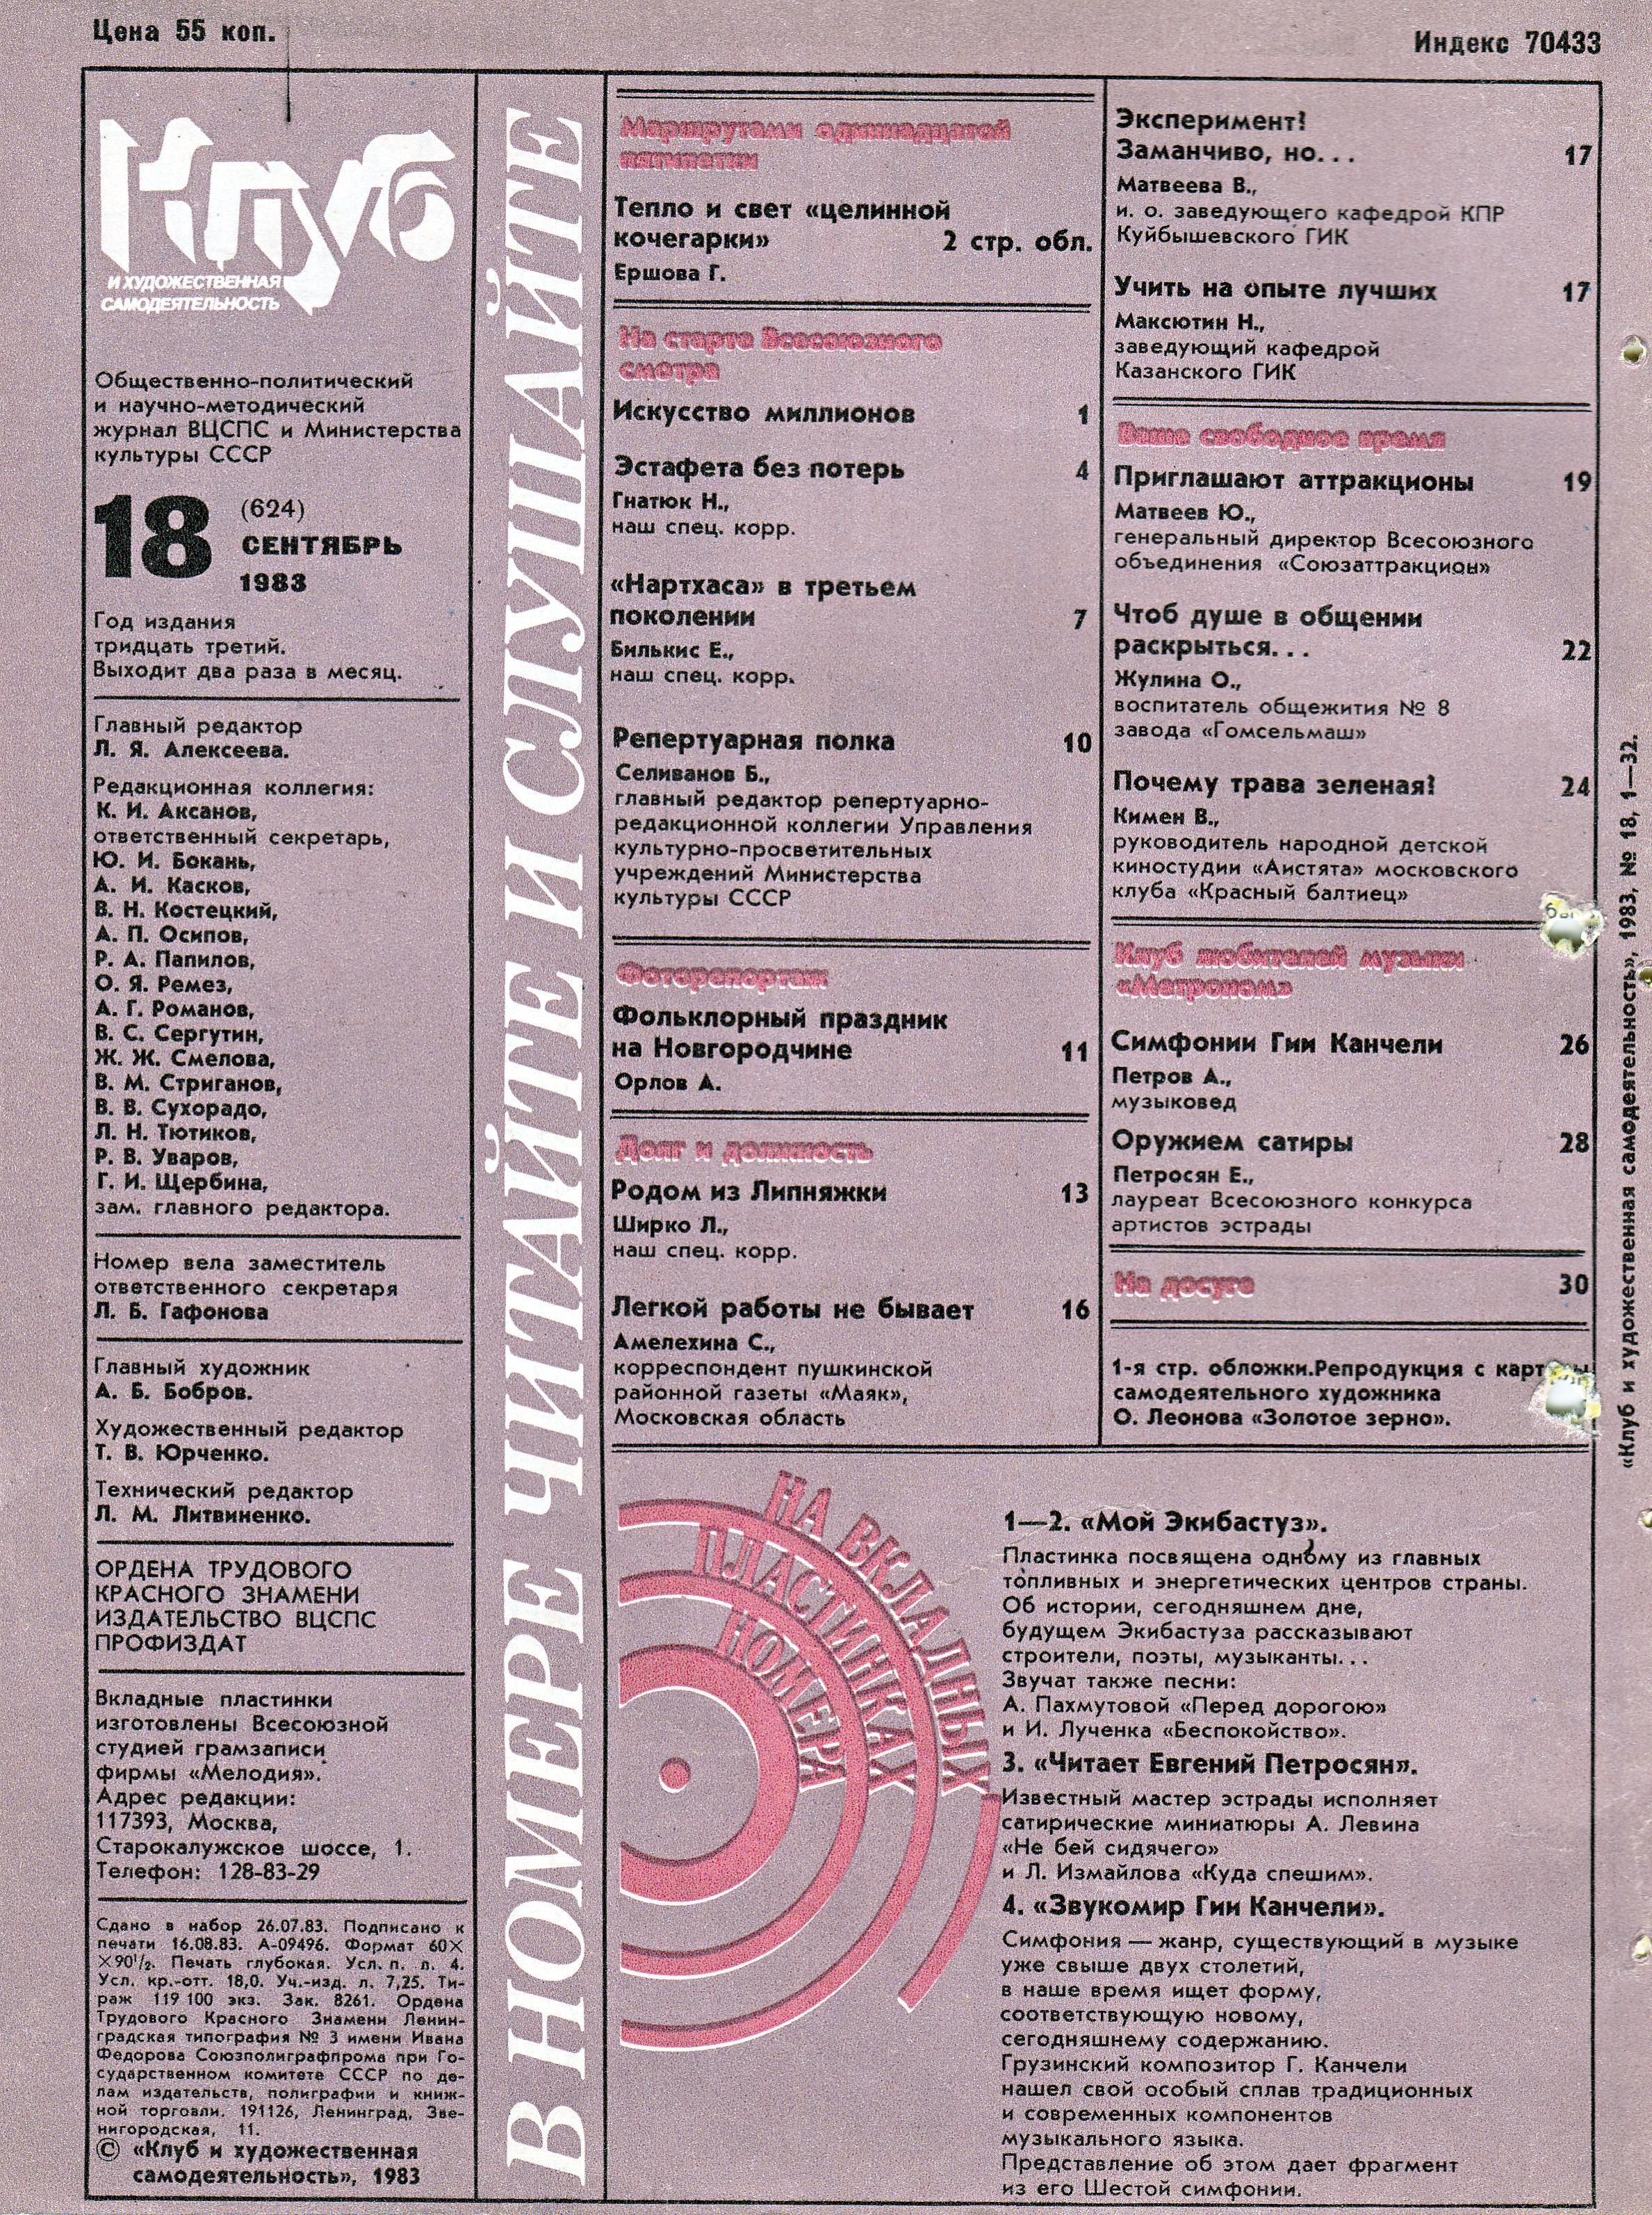 Клуб и художественная самодеятельность №18-1983